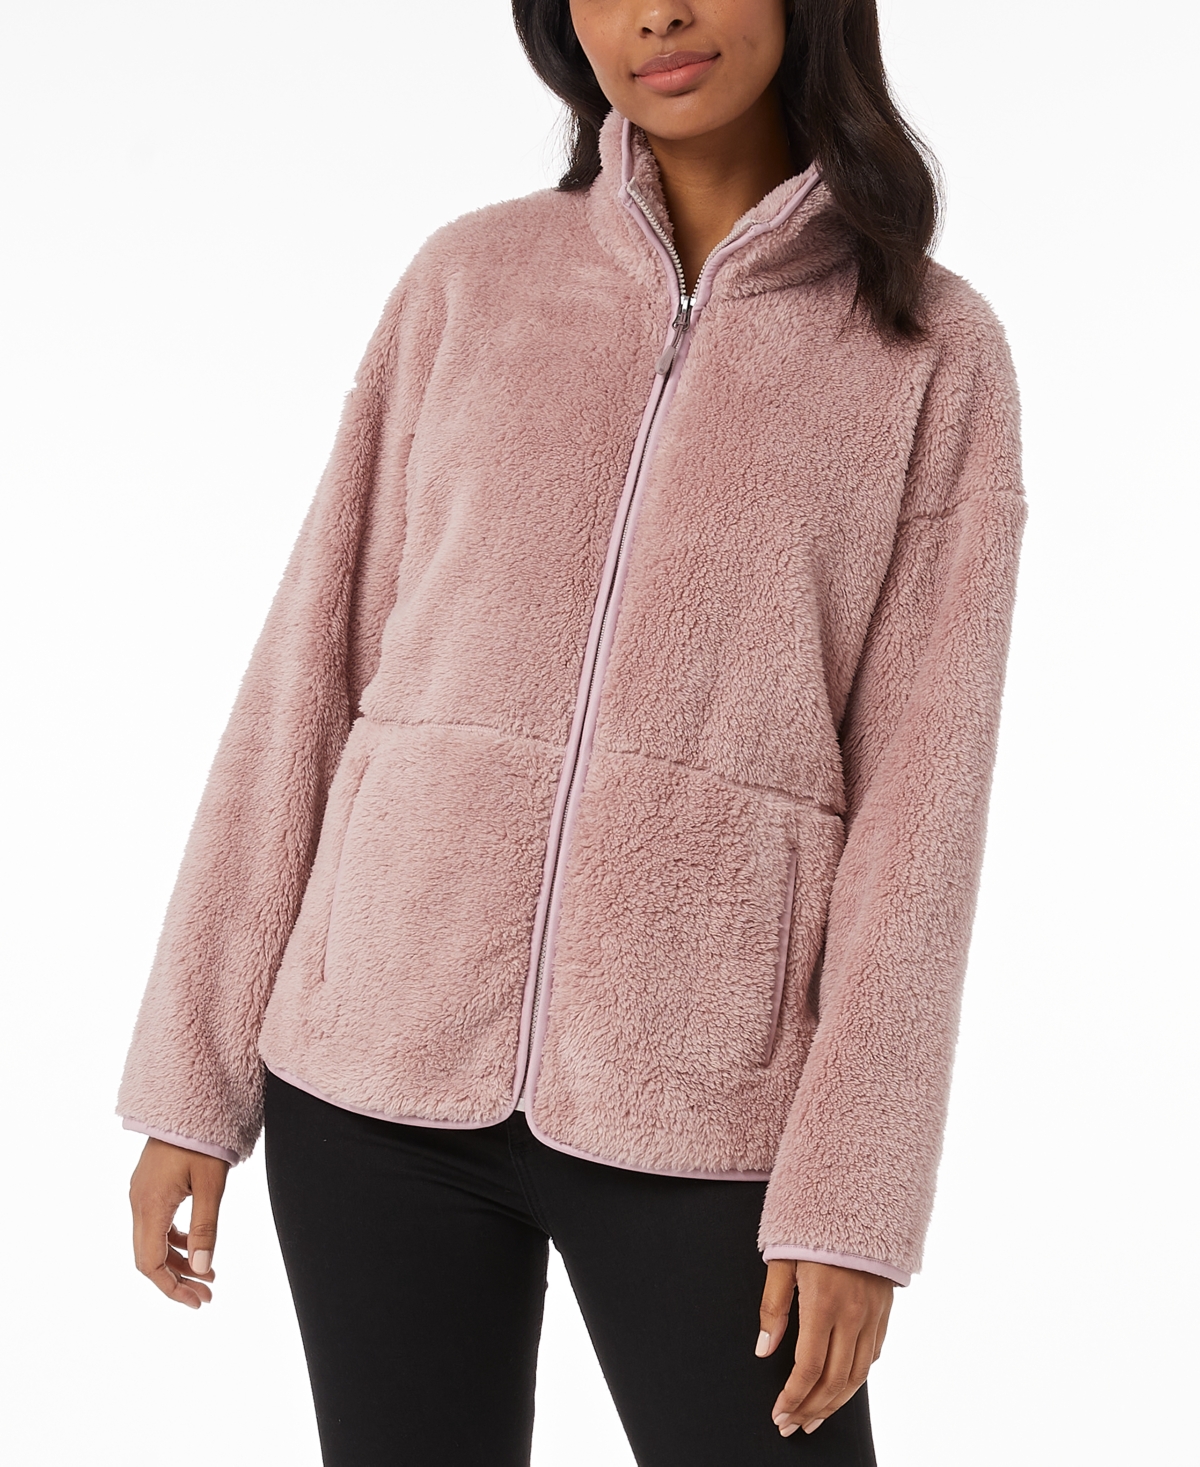  32 Degrees Women's Fleece Stand-Collar Zip Jacket